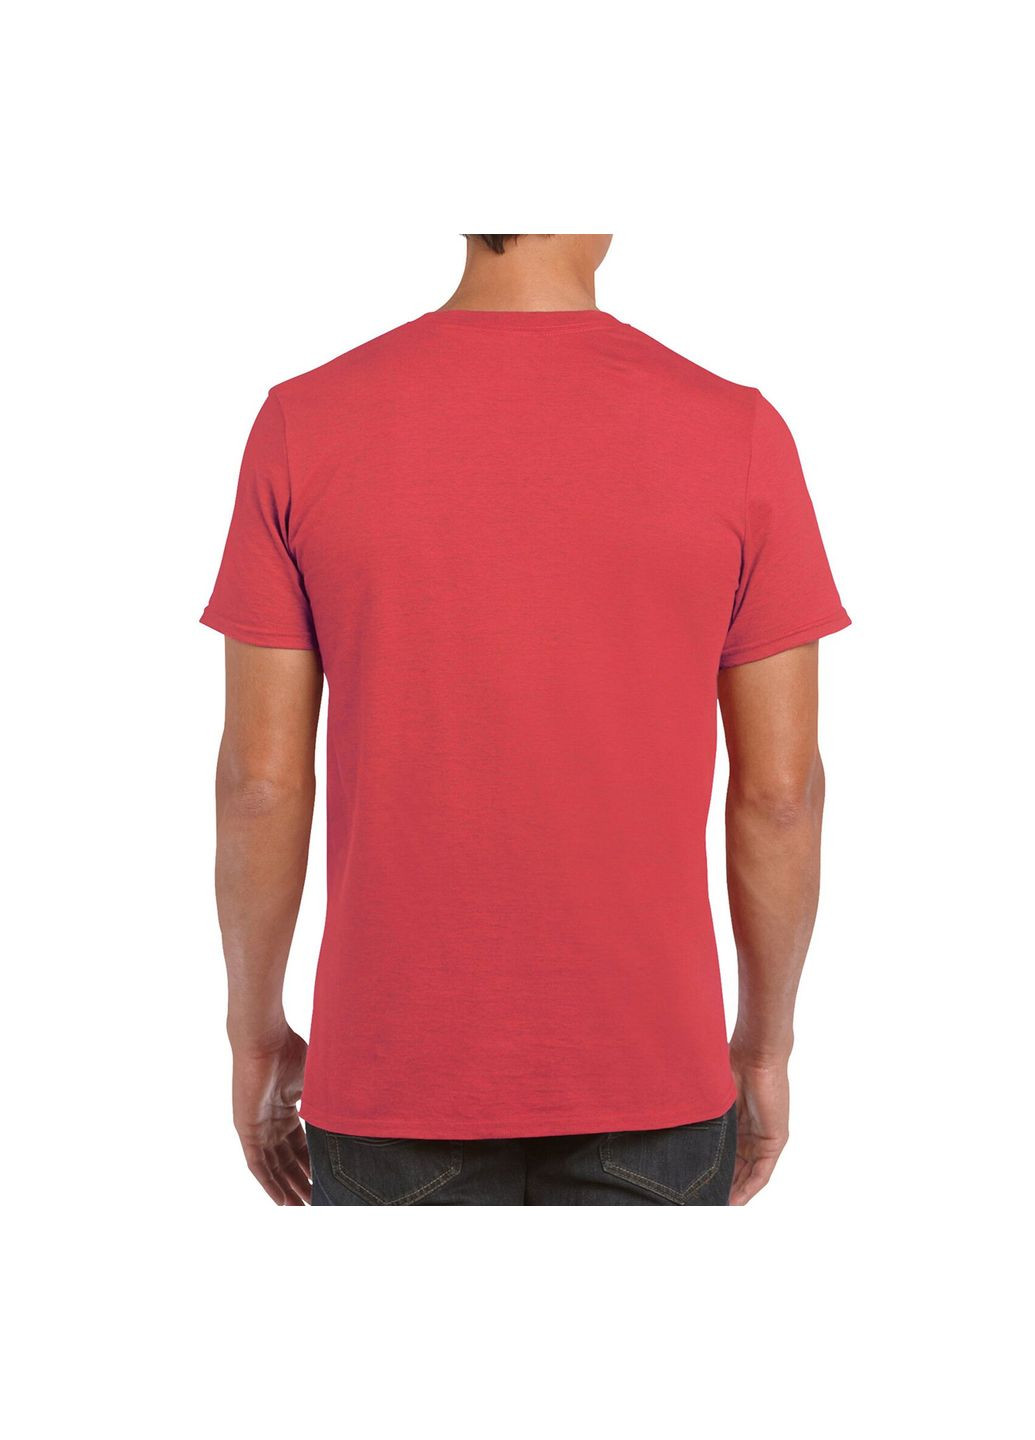 Красная футболка мужская однотонная червона 64000-193c с коротким рукавом Gildan Softstyle